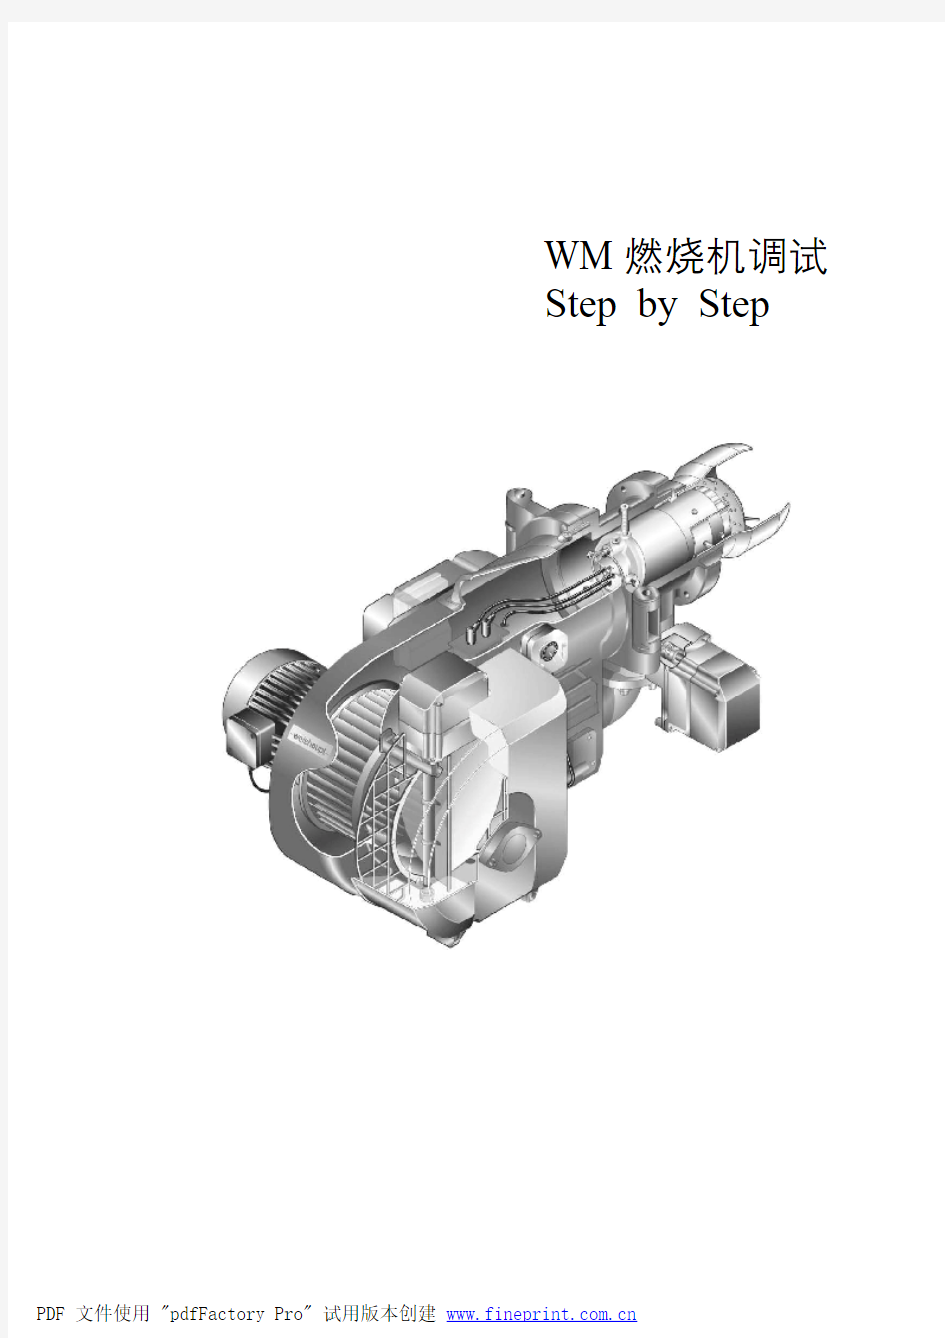 威索WM系列燃烧机调试步骤